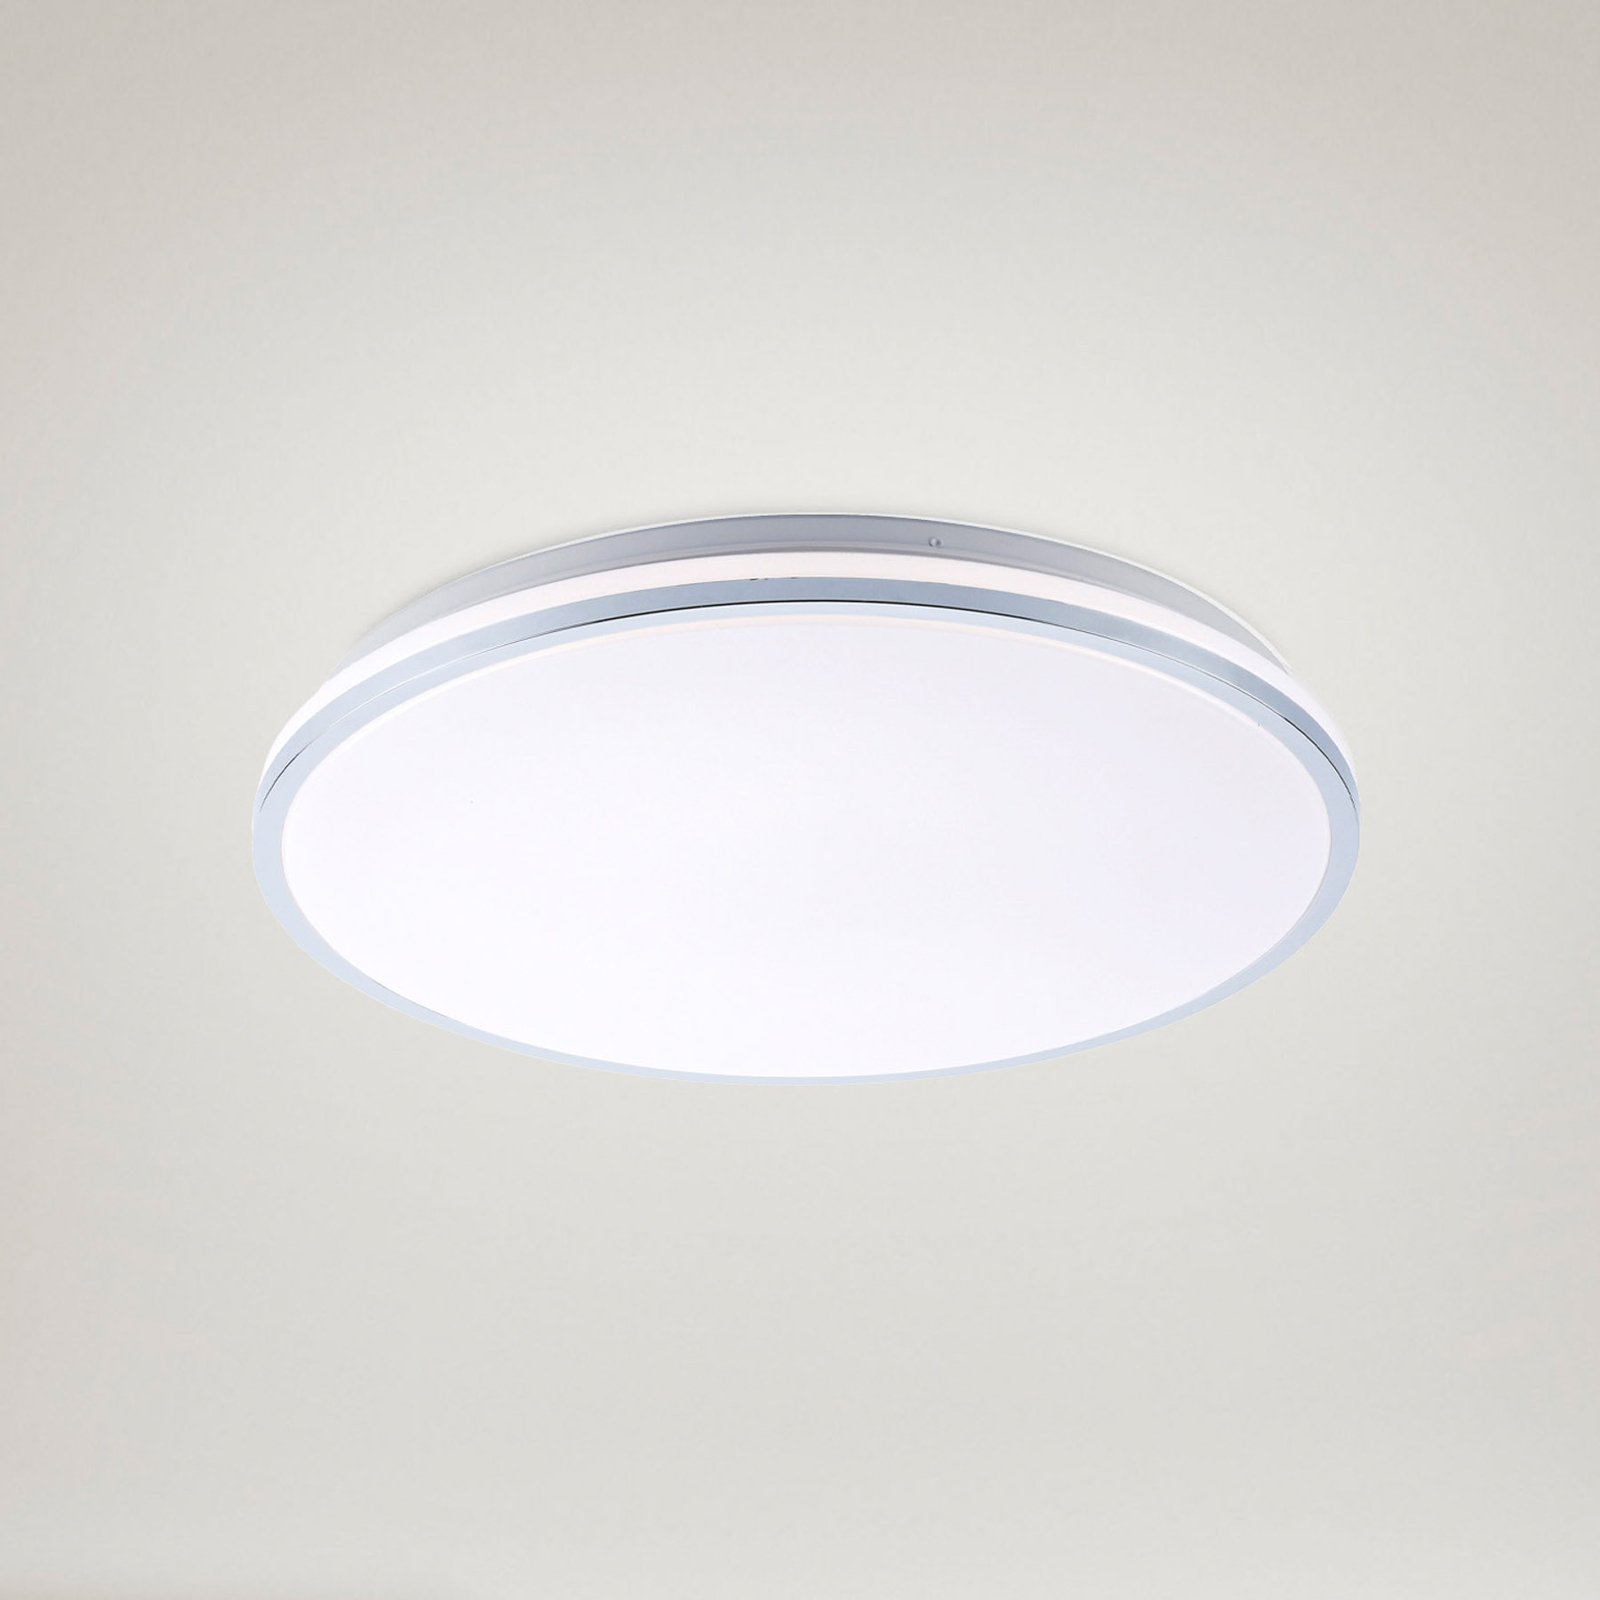 LED ceiling light Isabell, Ø 49 cm